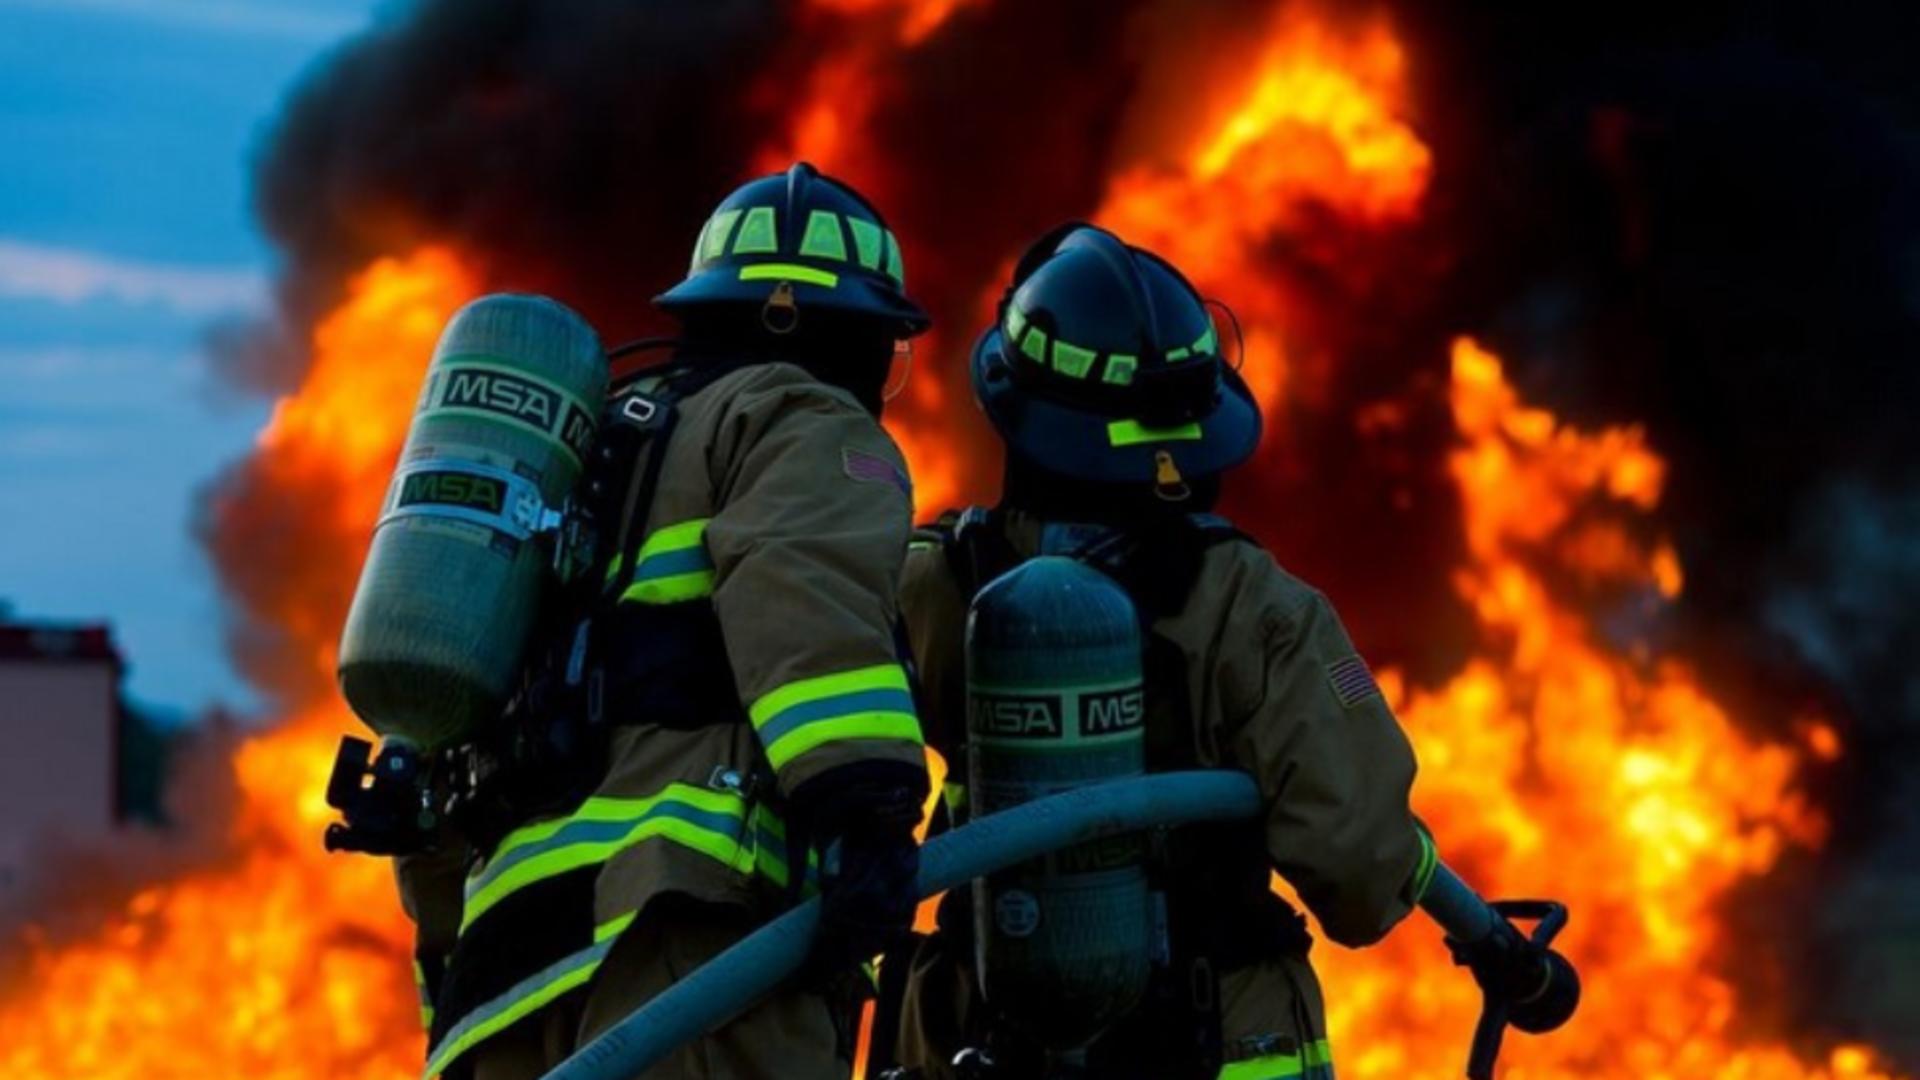 Intervenție pompieri incendiu - imagine cu notă sugestivă